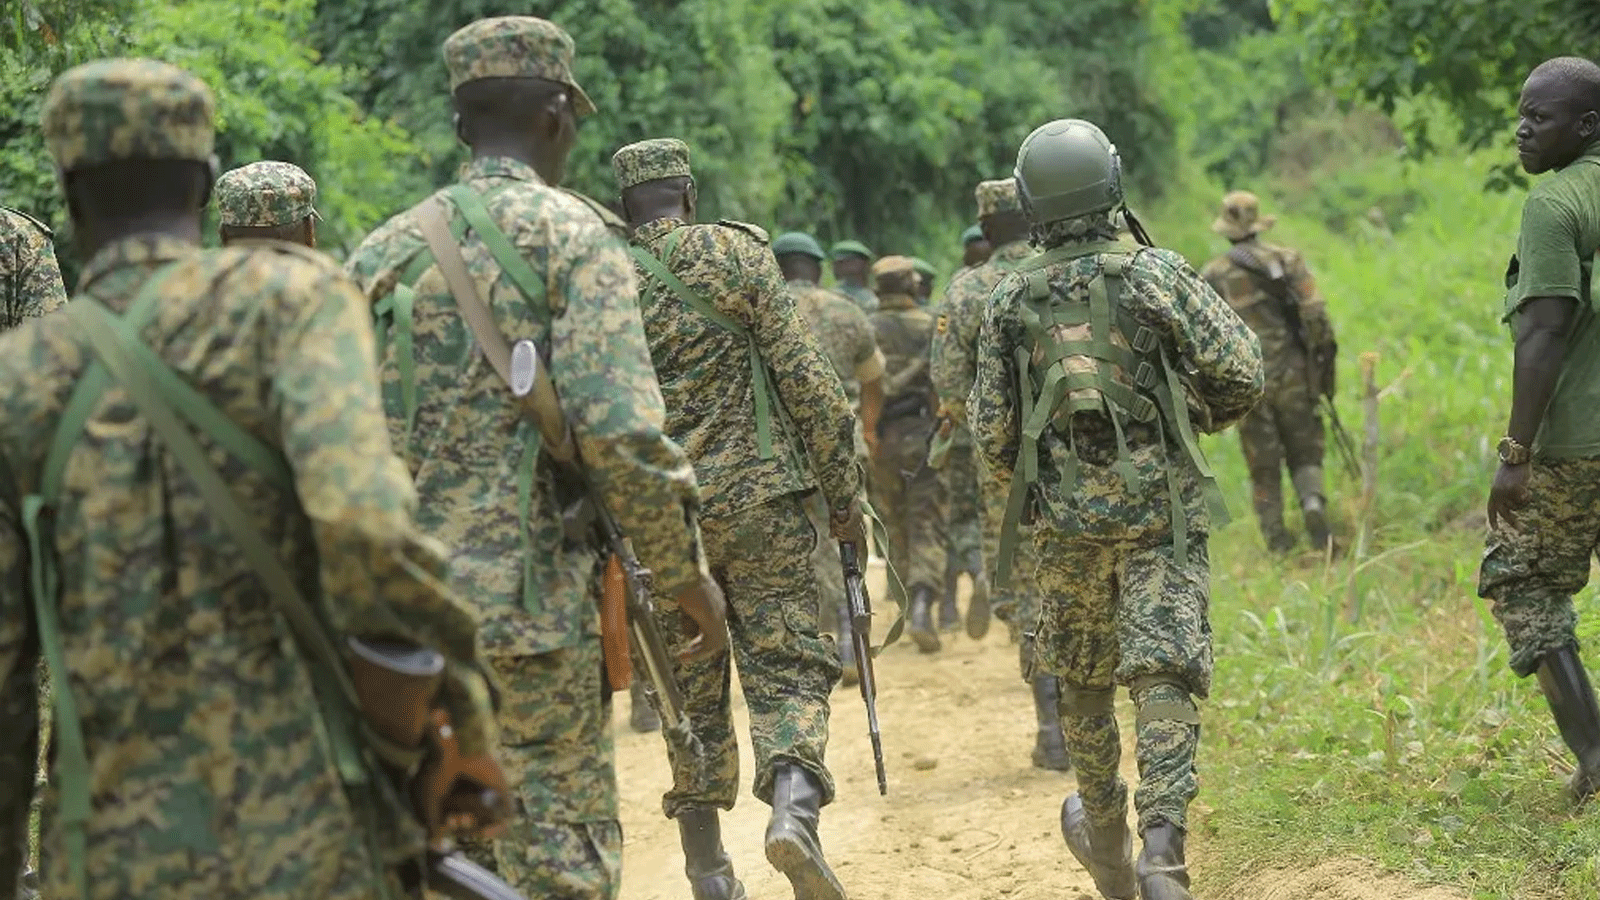 عناصر من قوات الدفاع الشعبية الأوغندية في طريق مباو - كامانغو